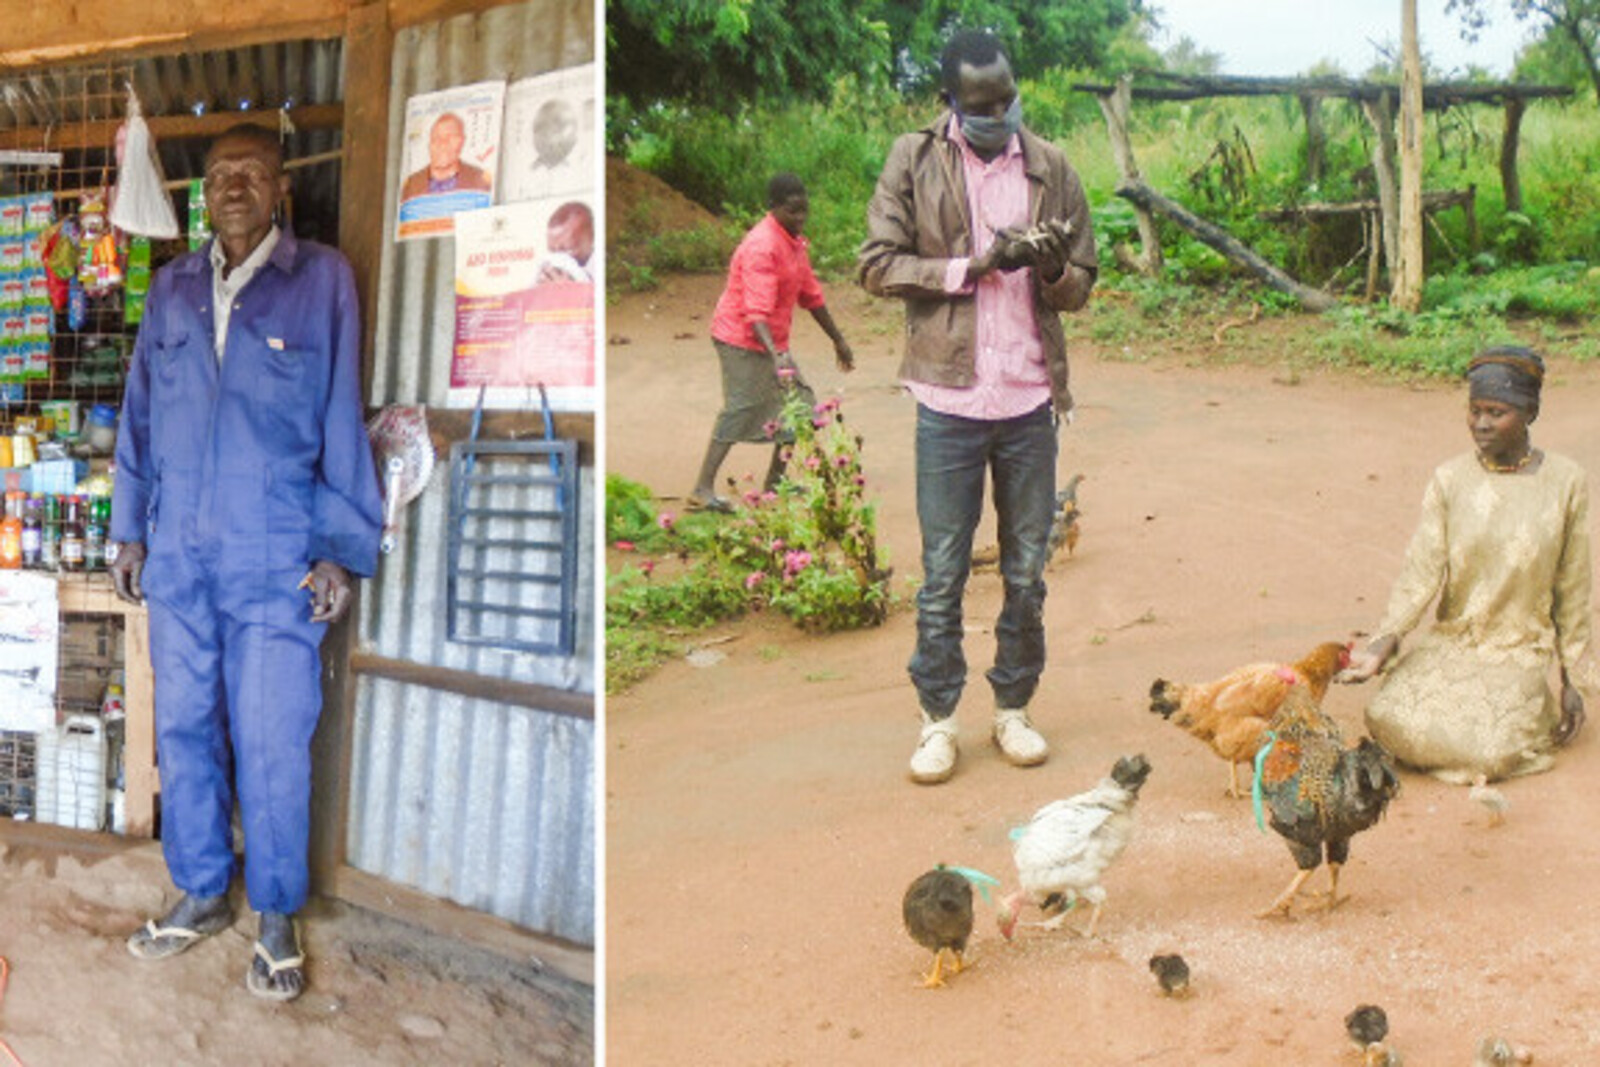 Geflüchtete Menschen in Uganda bekommen die Chance, für sich selbst zu sorgen und Einkommen zu schaffen